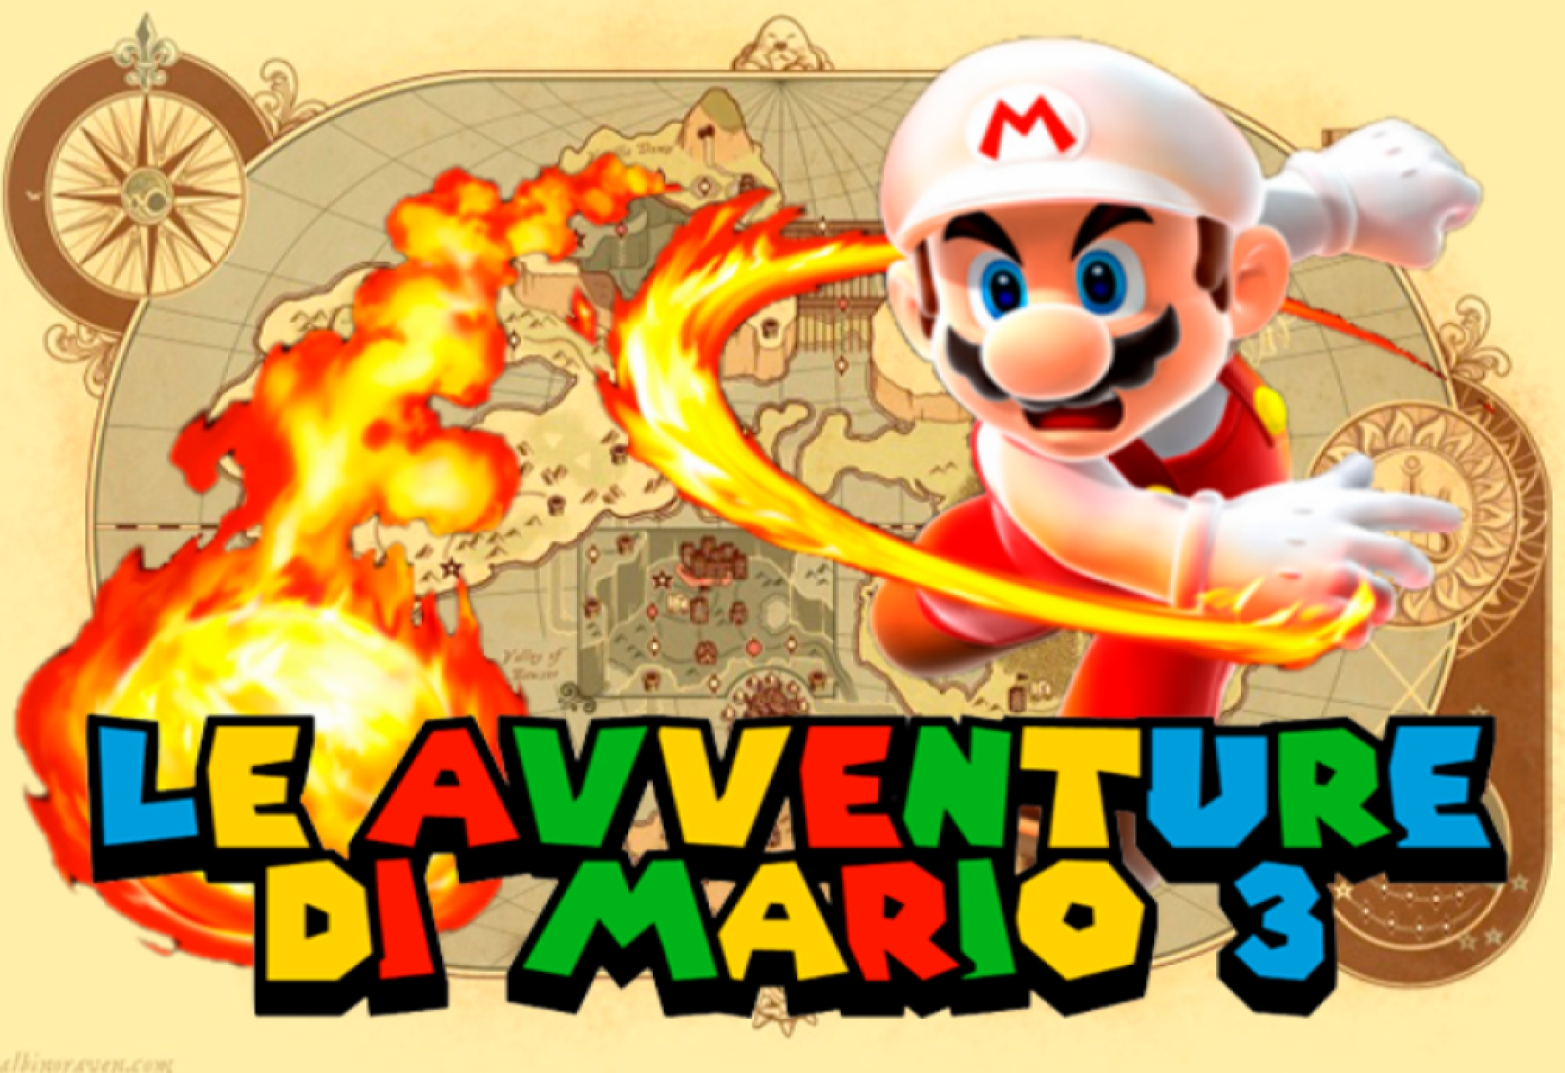 Le Avventure di Mario 3